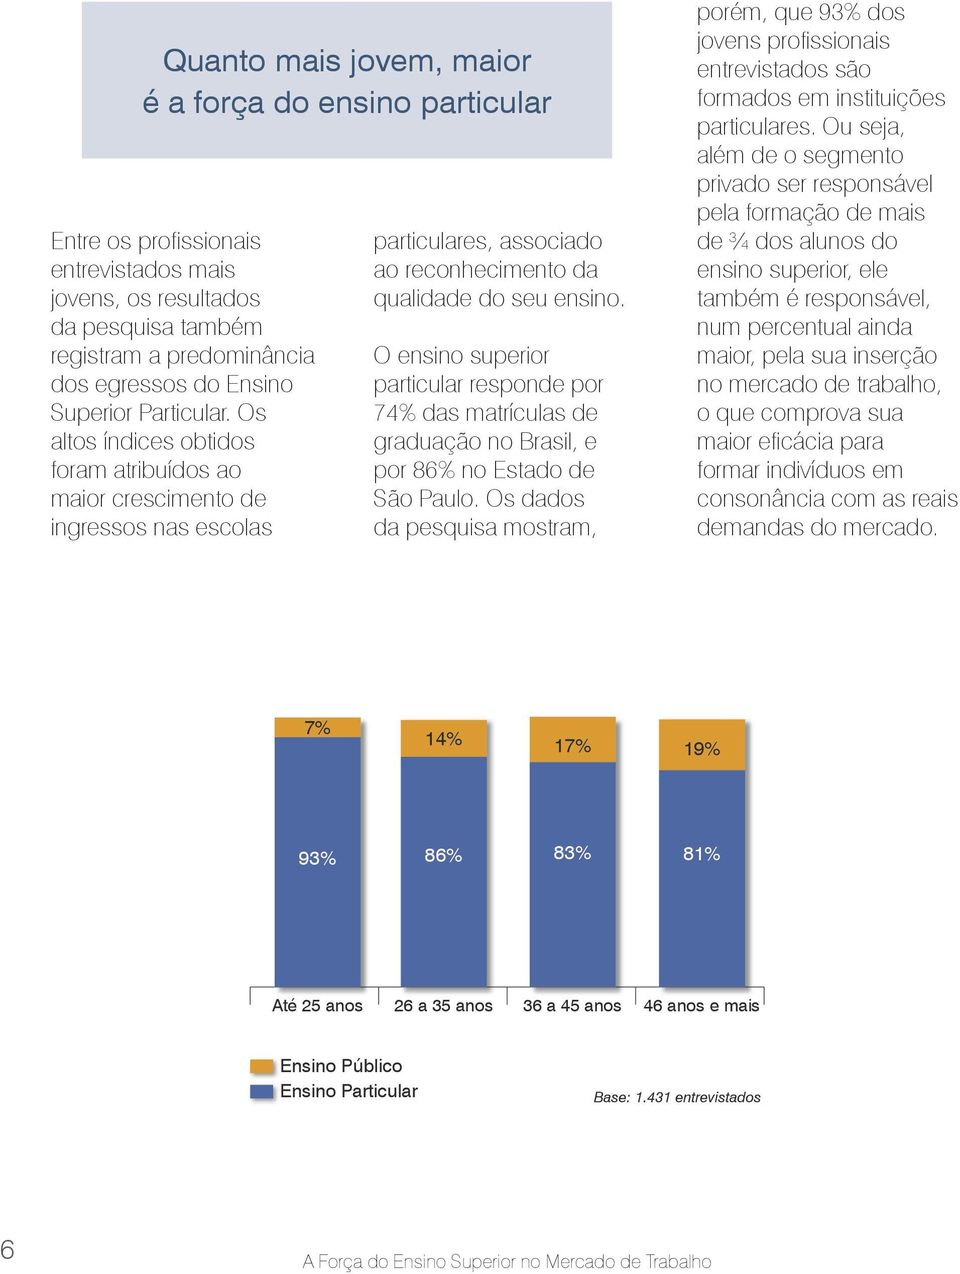 O ensino superior particular responde por 74% das matrículas de graduação no Brasil, e por 86% no Estado de São Paulo.